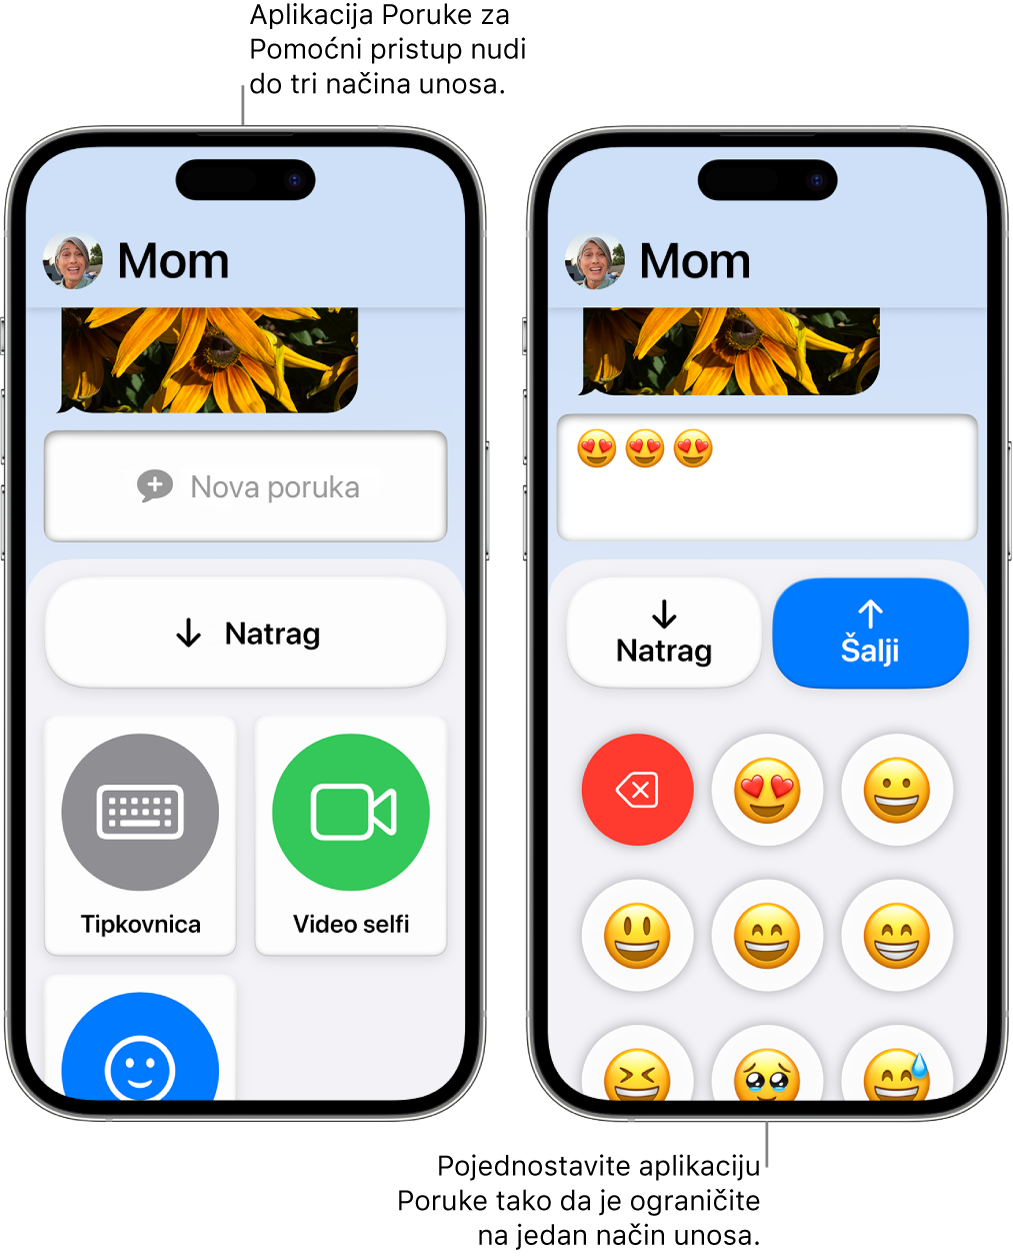 Dva iPhonea u Pomoćnom pristupu. Jedan iPhone prikazuje aplikaciju Poruke s načinima unosa koje korisnik može odabrati, kao što su Tipkovnica ili Video selfi. Drugi prikazuje poruku koja se šalje koristeći tipkovnicu koja je samo za emojije.